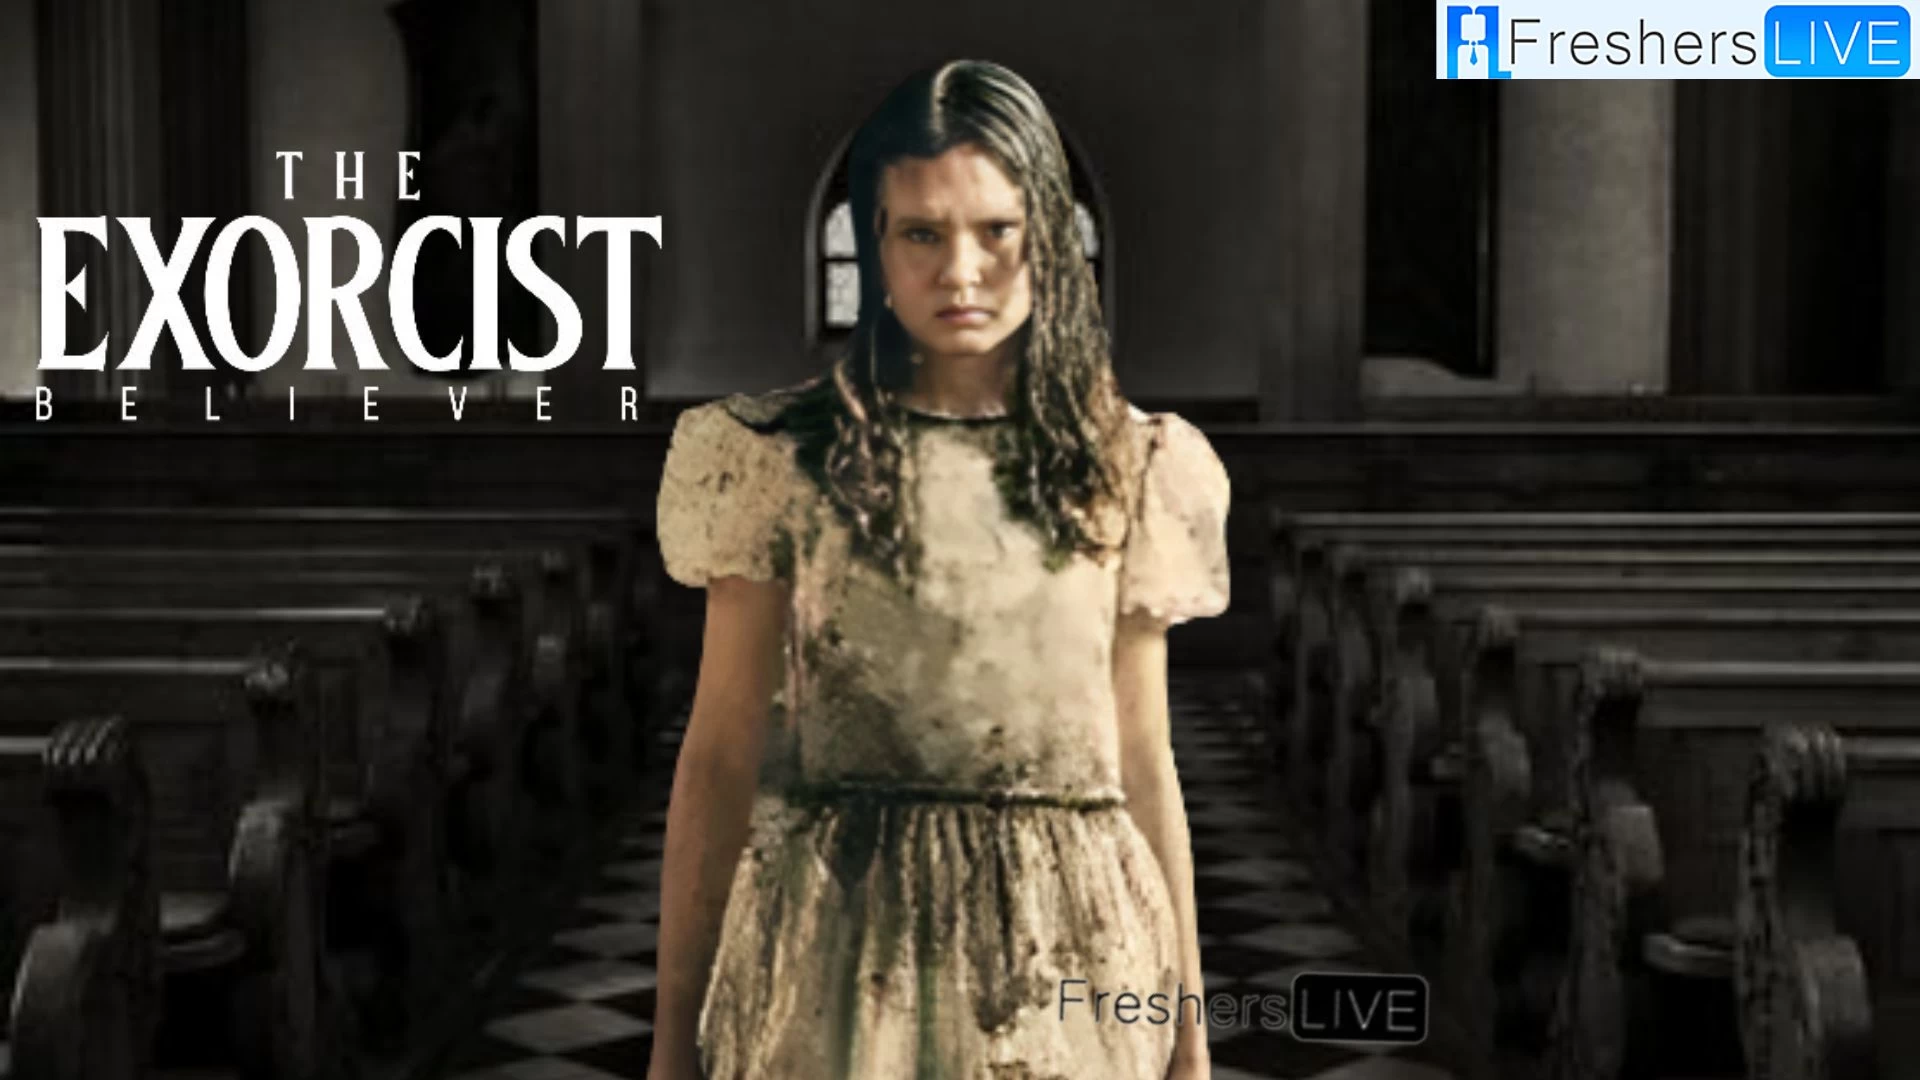 ¿El creyente exorcista está basado en una historia real?  El creyente exorcista, reparto, trama y más